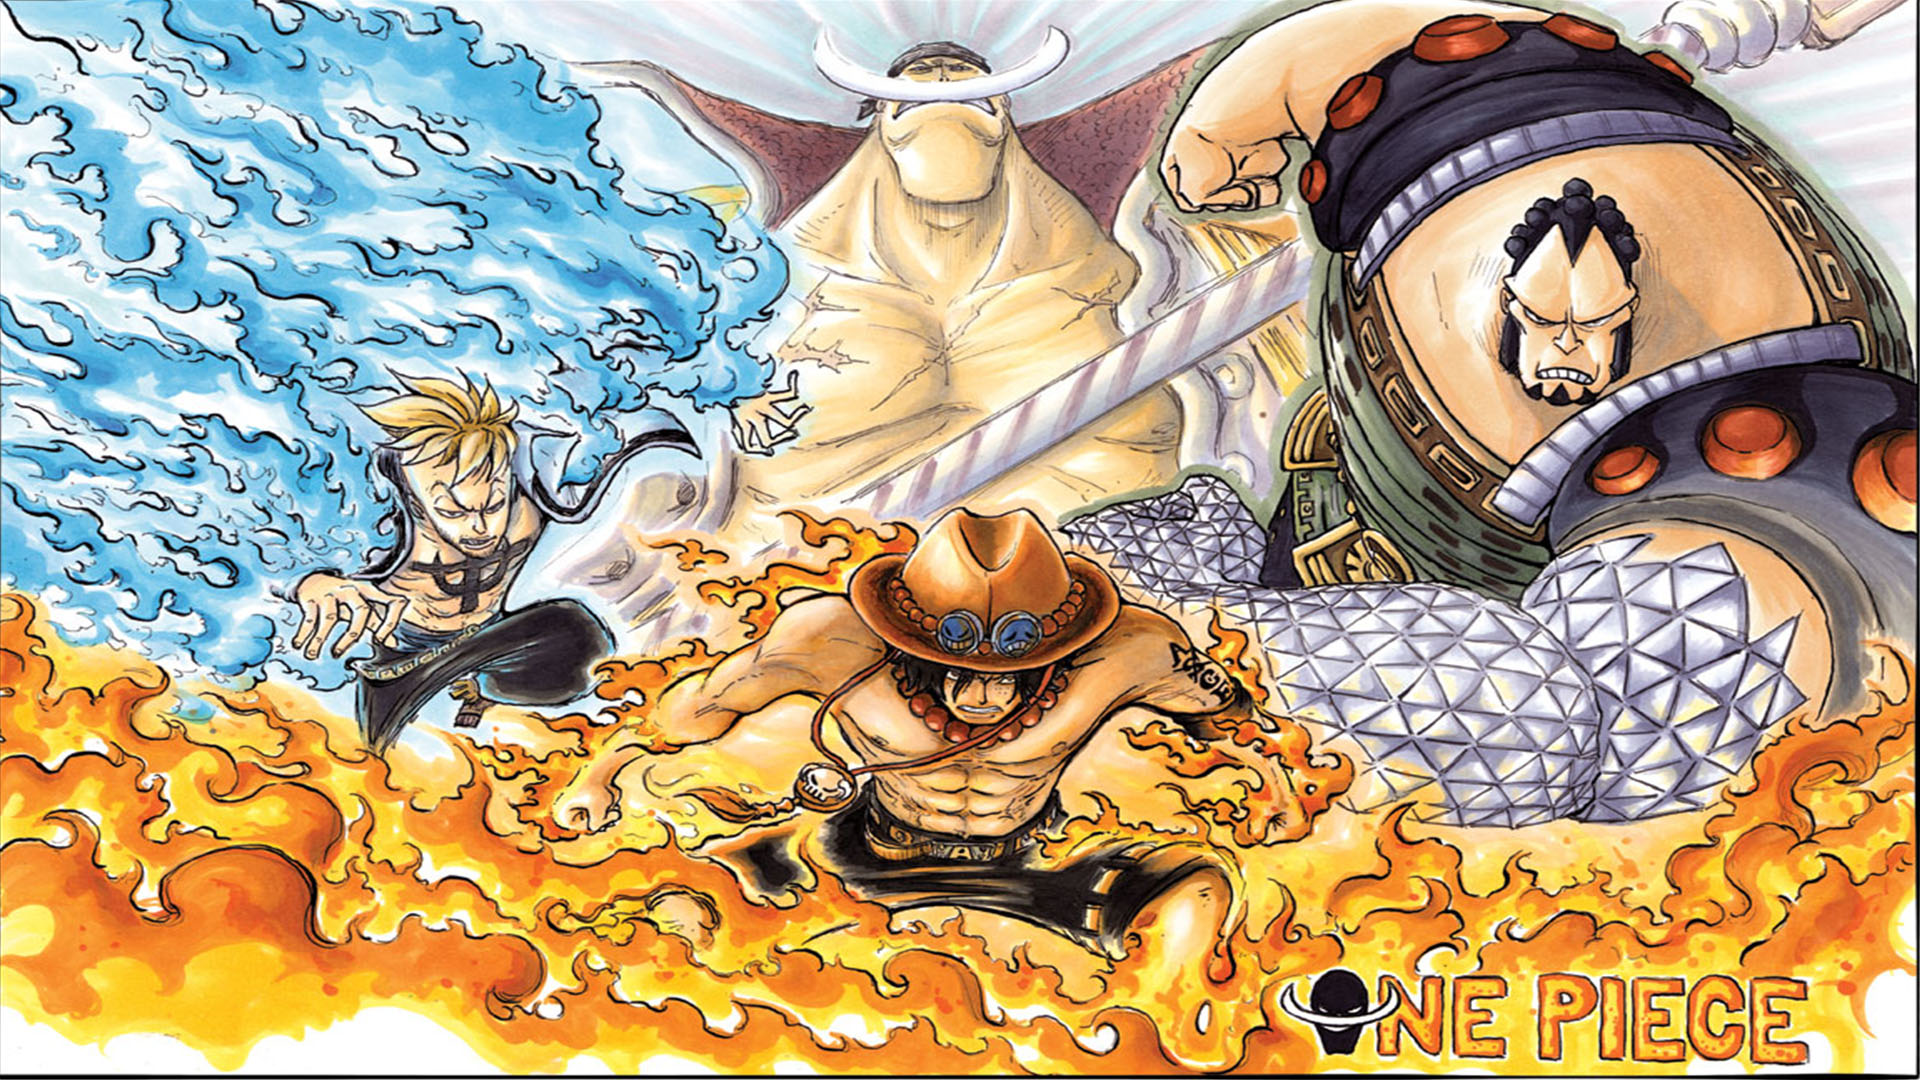 One Piece: Hành trình phiêu lưu tuyệt vời cùng nhóm hải tặc Mũ Rơm chưa bao giờ hết hấp dẫn. Cùng tựa game này, khám phá thế giới One Piece trong một trò chơi đầy thử thách và chứa đựng bí mật mà bạn sẽ không muốn bỏ qua.